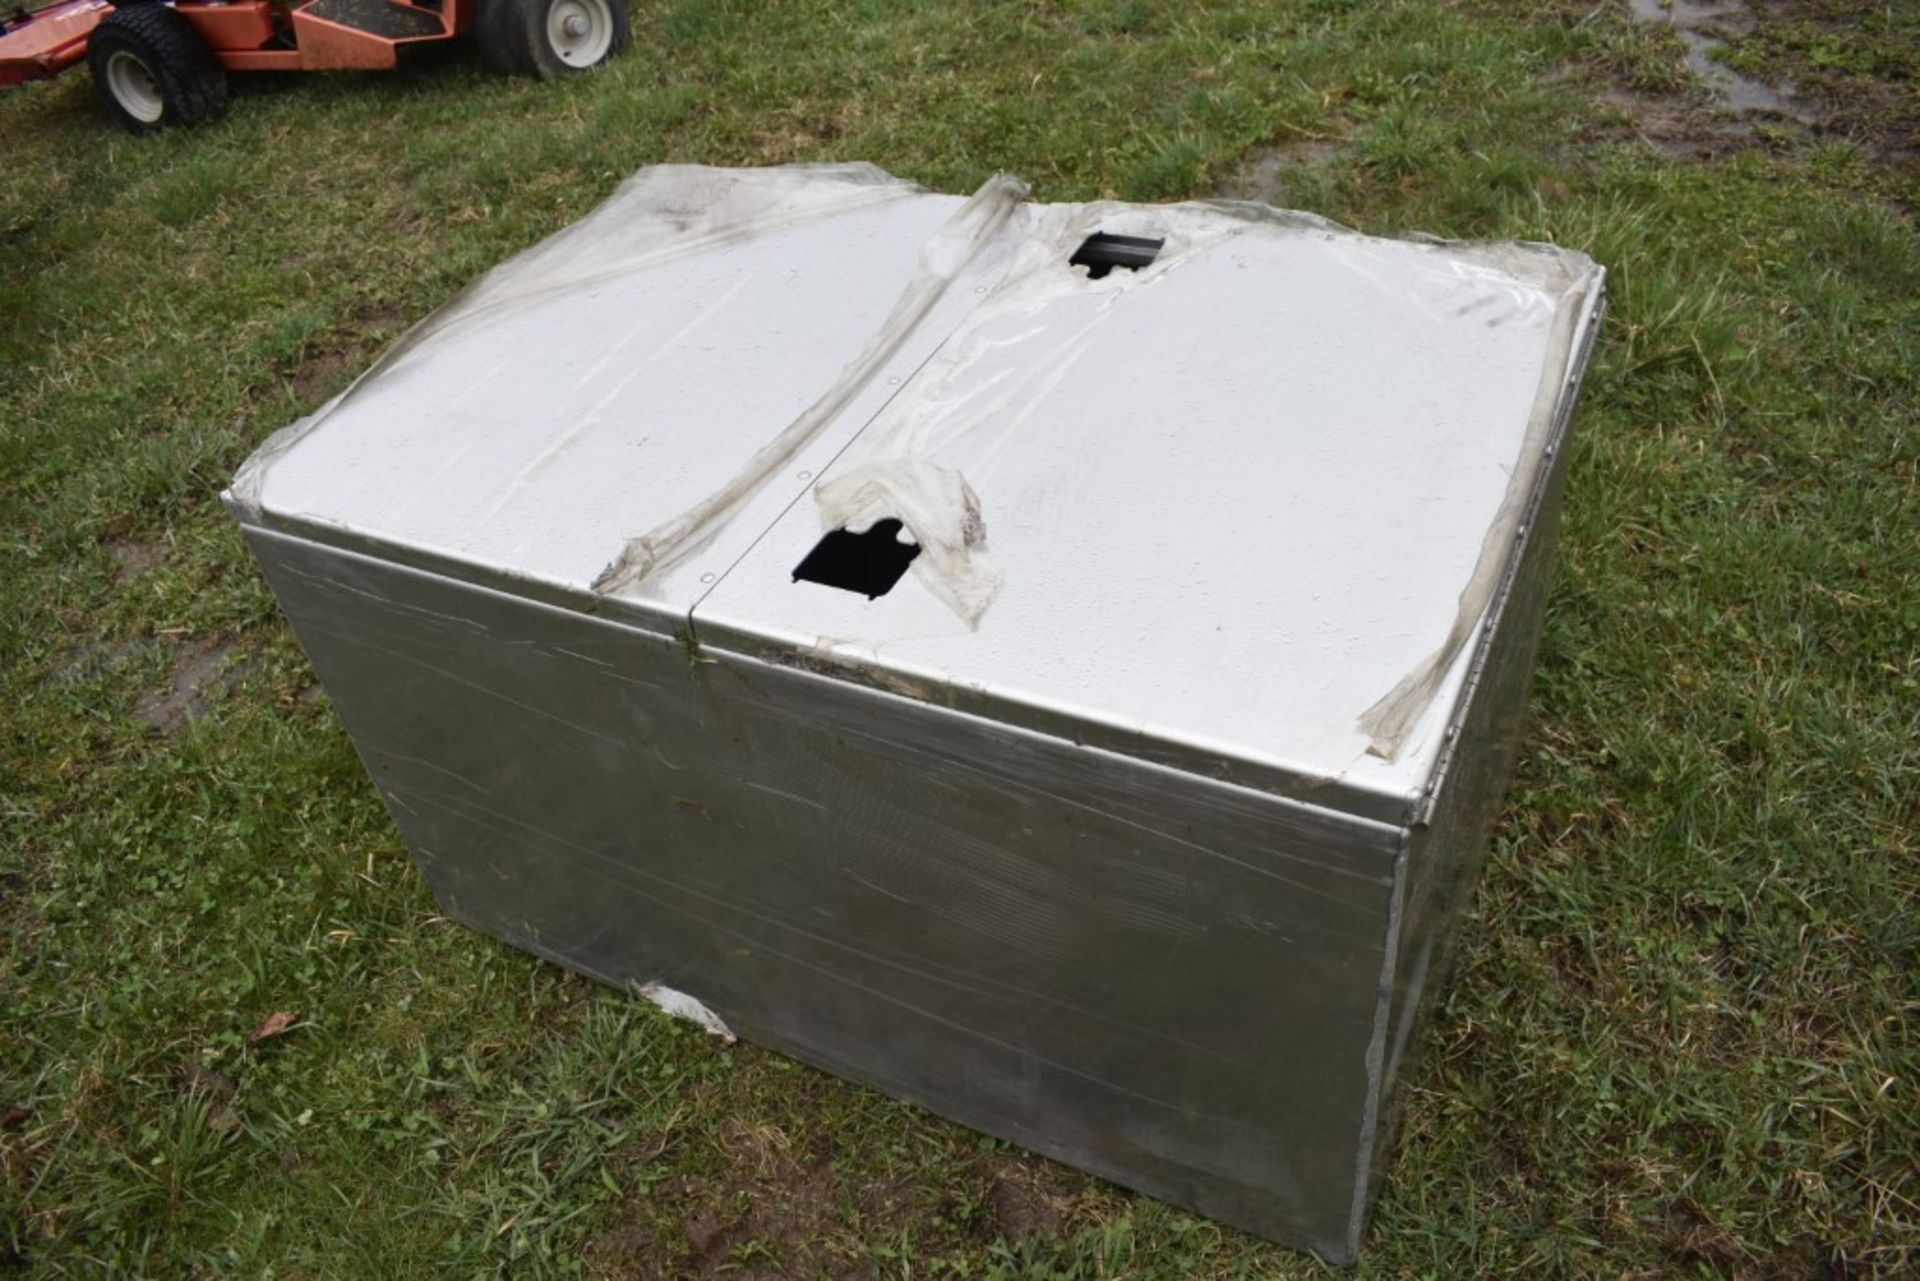 48" x 32" x 27" Aluminum Tool Box